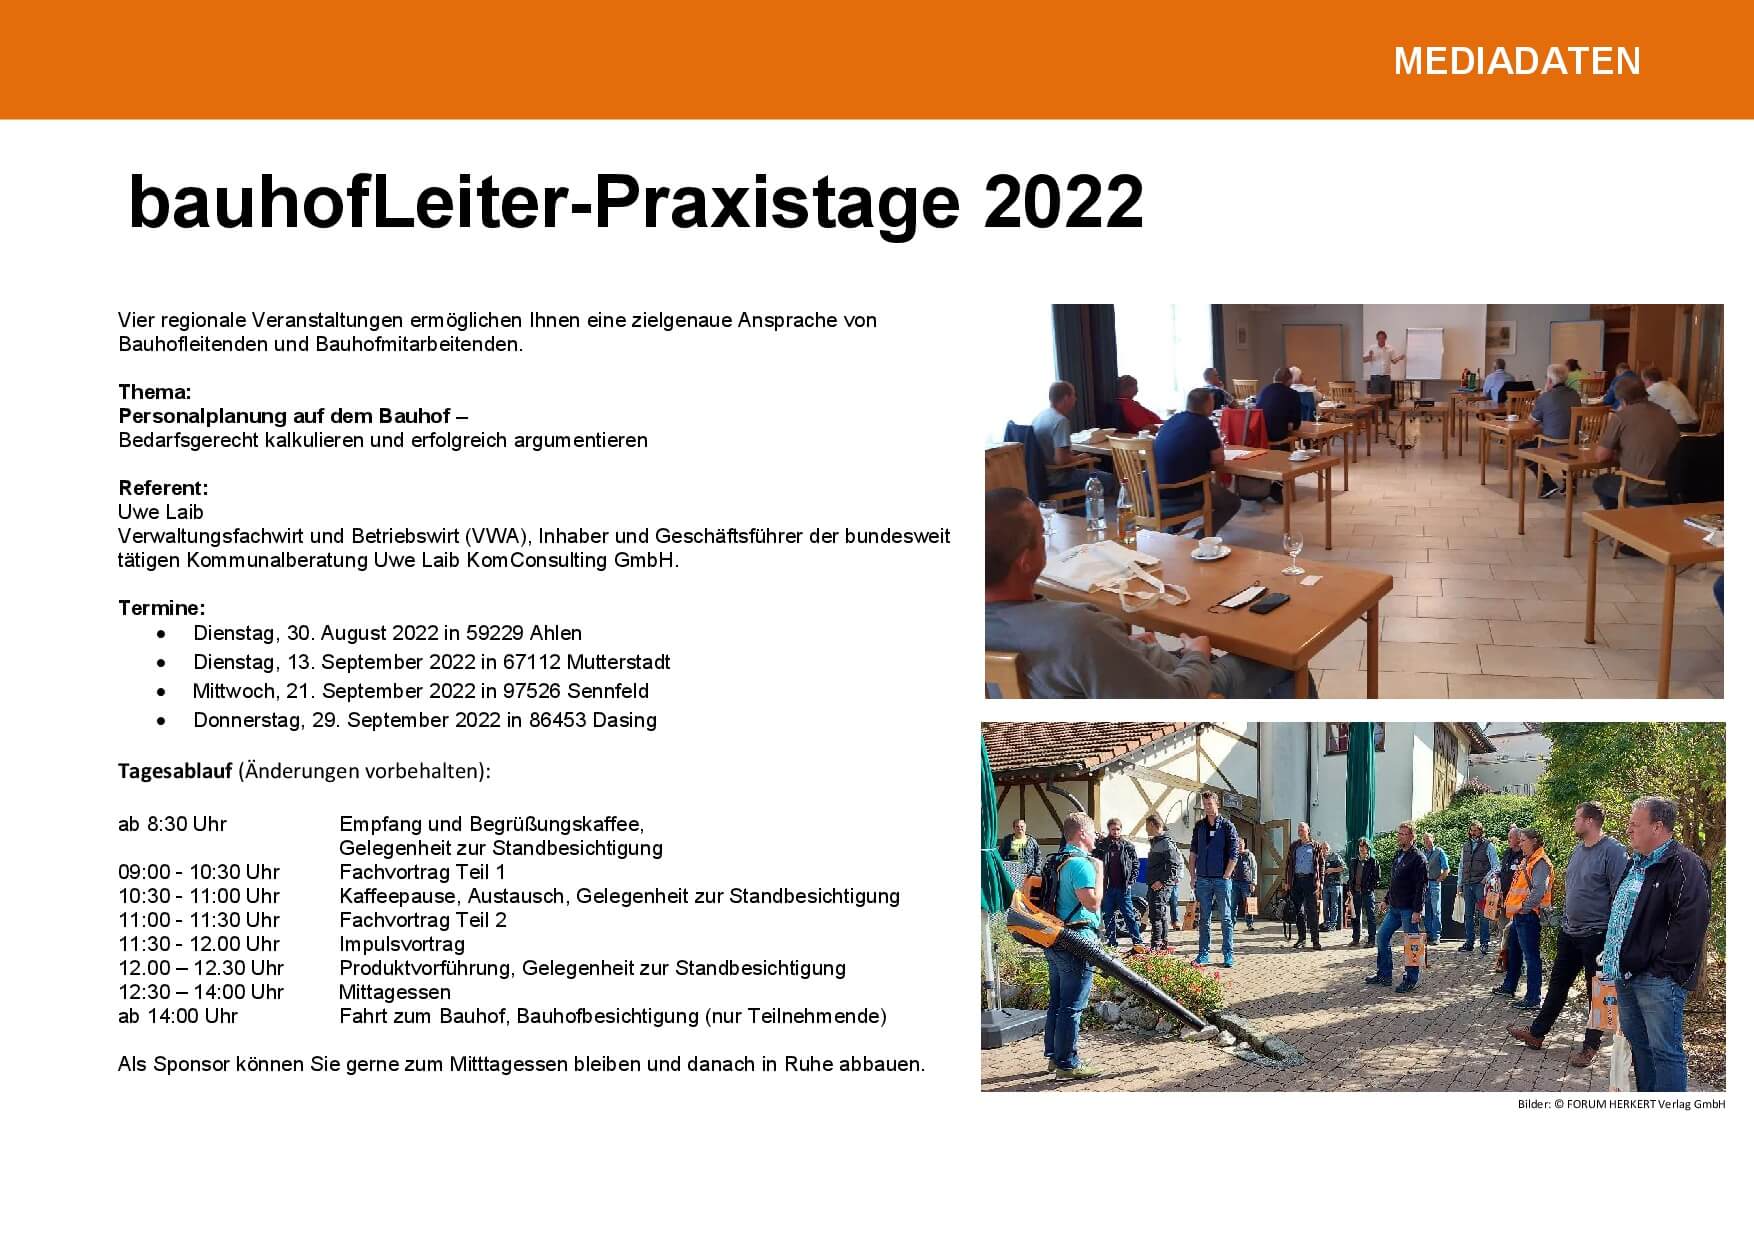 Mediadaten_bhl Praxistage 2022